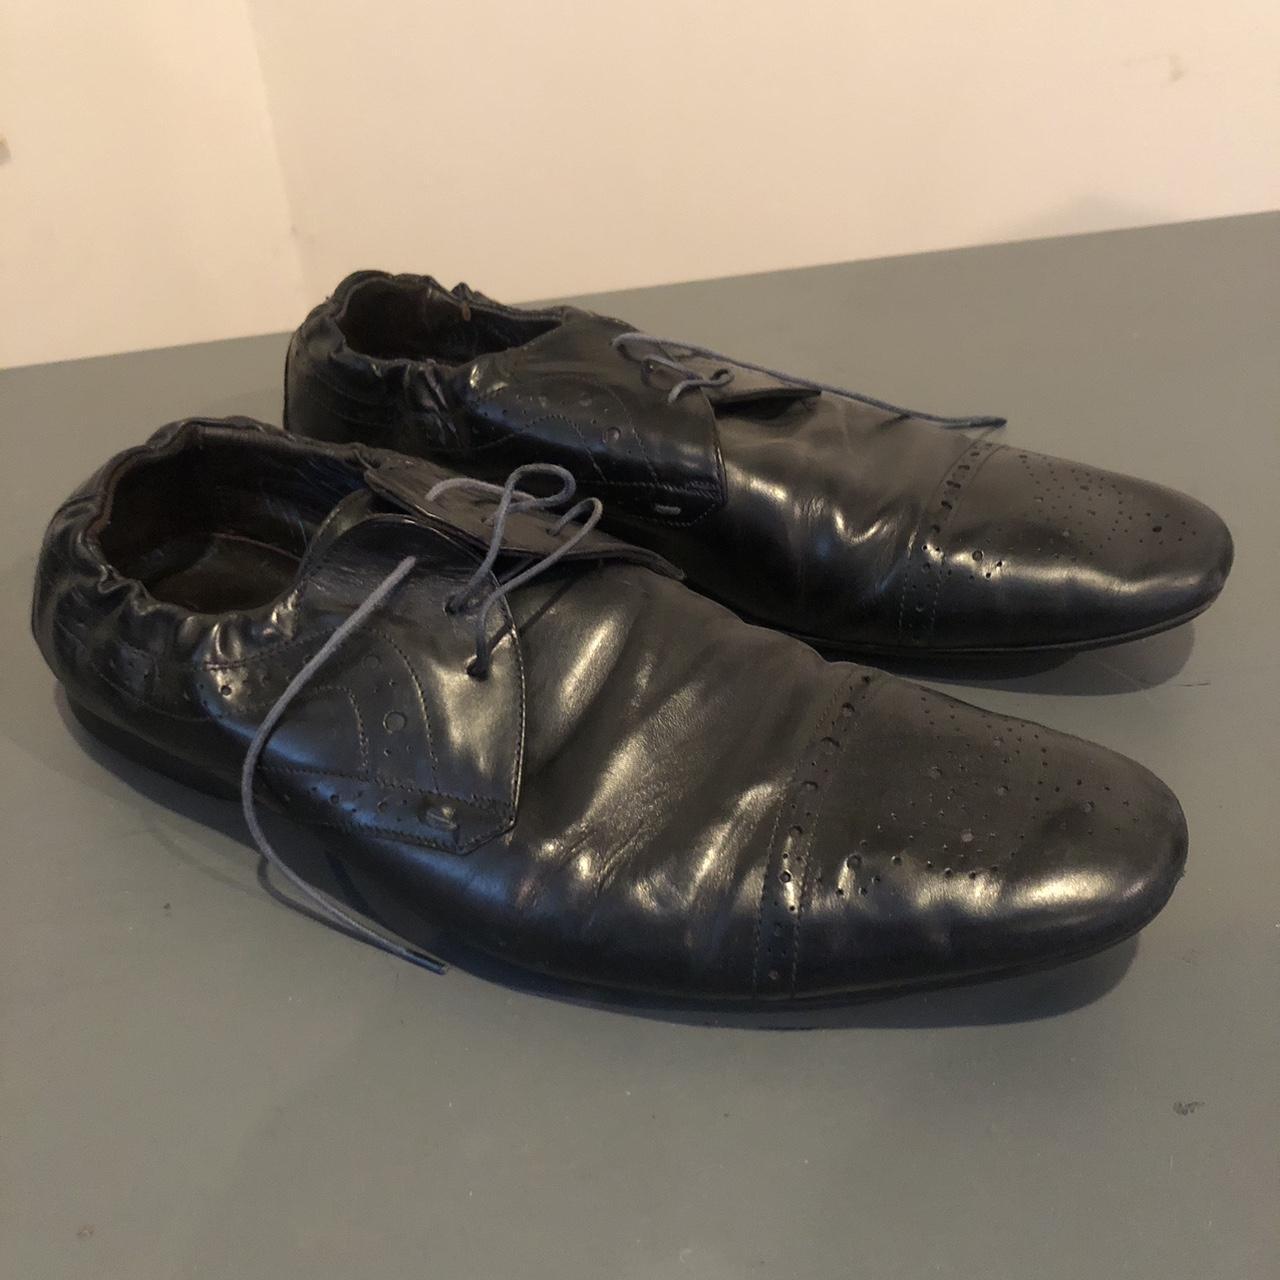 Paul Smith Suit Shoes Size 11. Good condition.... - Depop